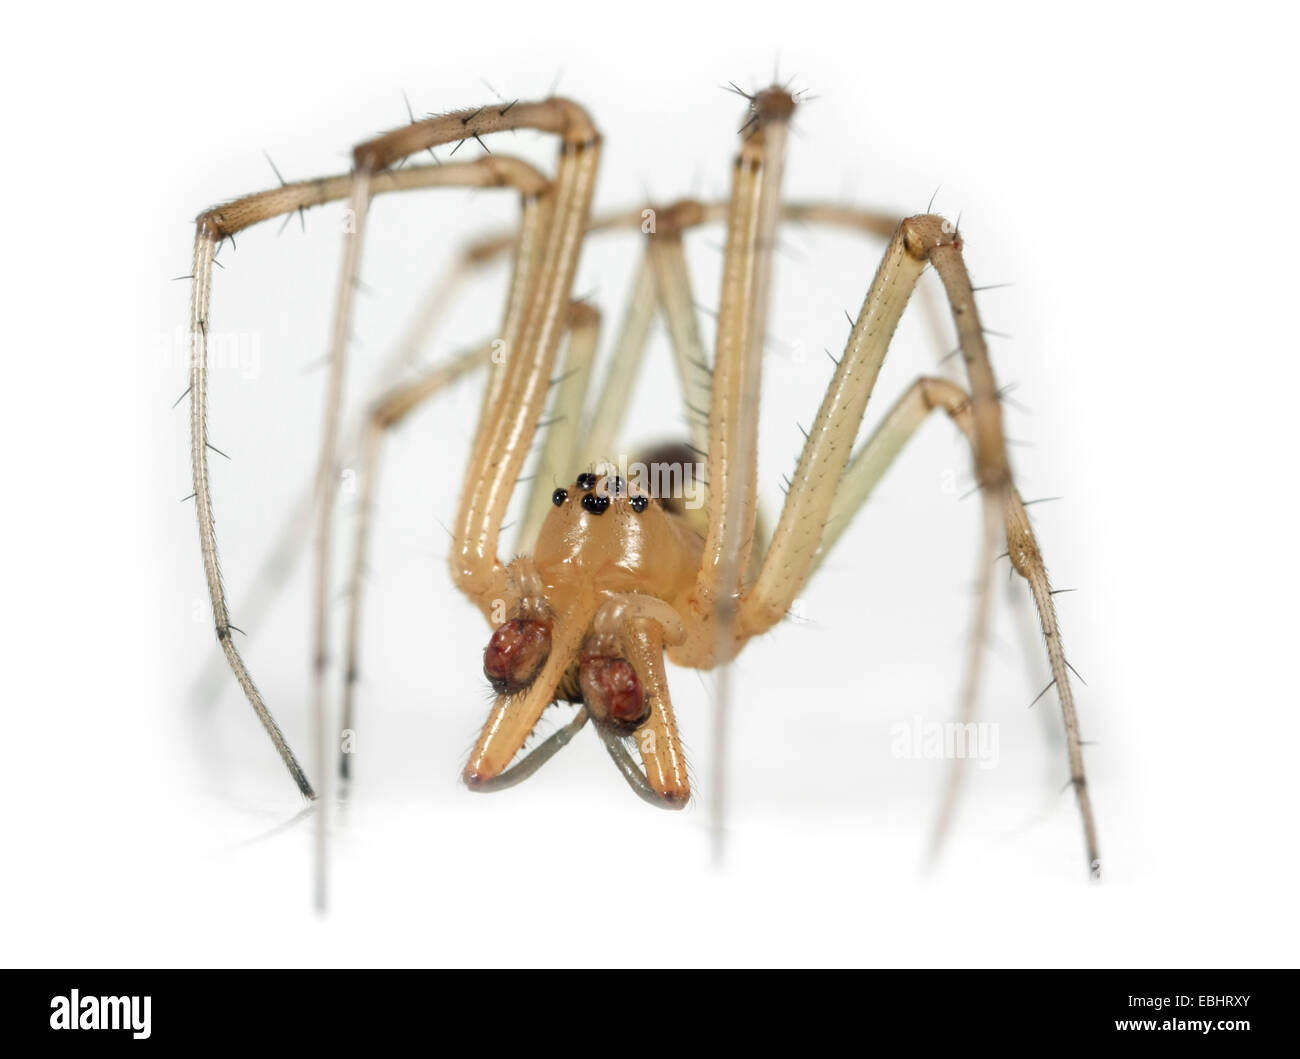 Ein männlicher Gemeinsame Hängematte - Weaver (Linyphia Triangularis) Spinne auf einem weißen Hintergrund, ein Teil der Familie - Linyphiidae Sheetweb Weber. Stockfoto